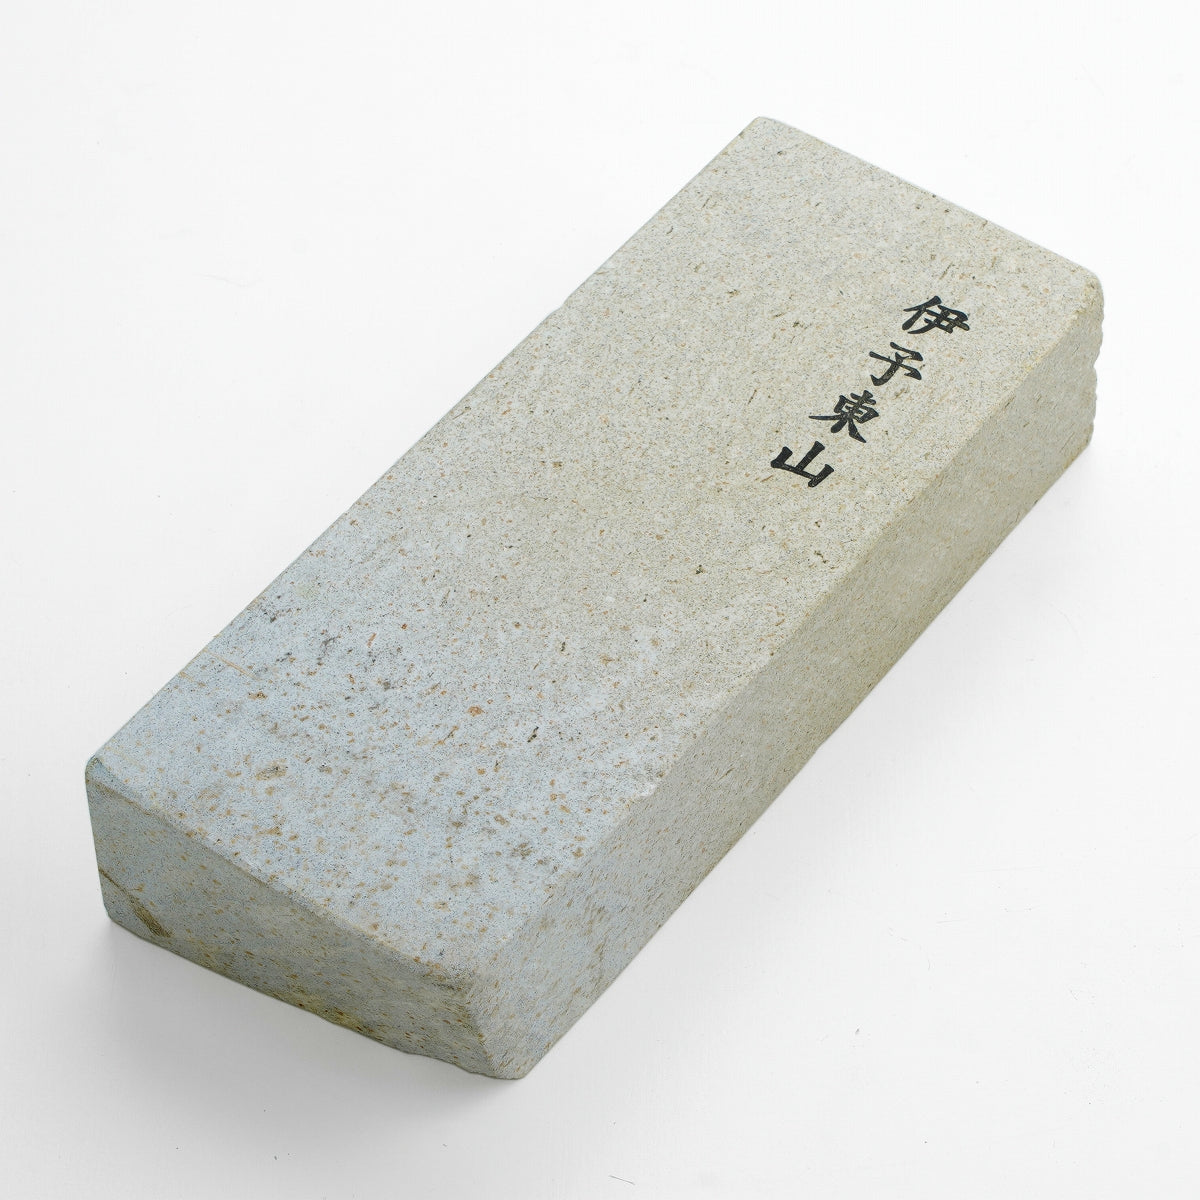 "IYO HIGASHIYAMA", Tennen Toishi (Japanese Natural Stone), 1243g